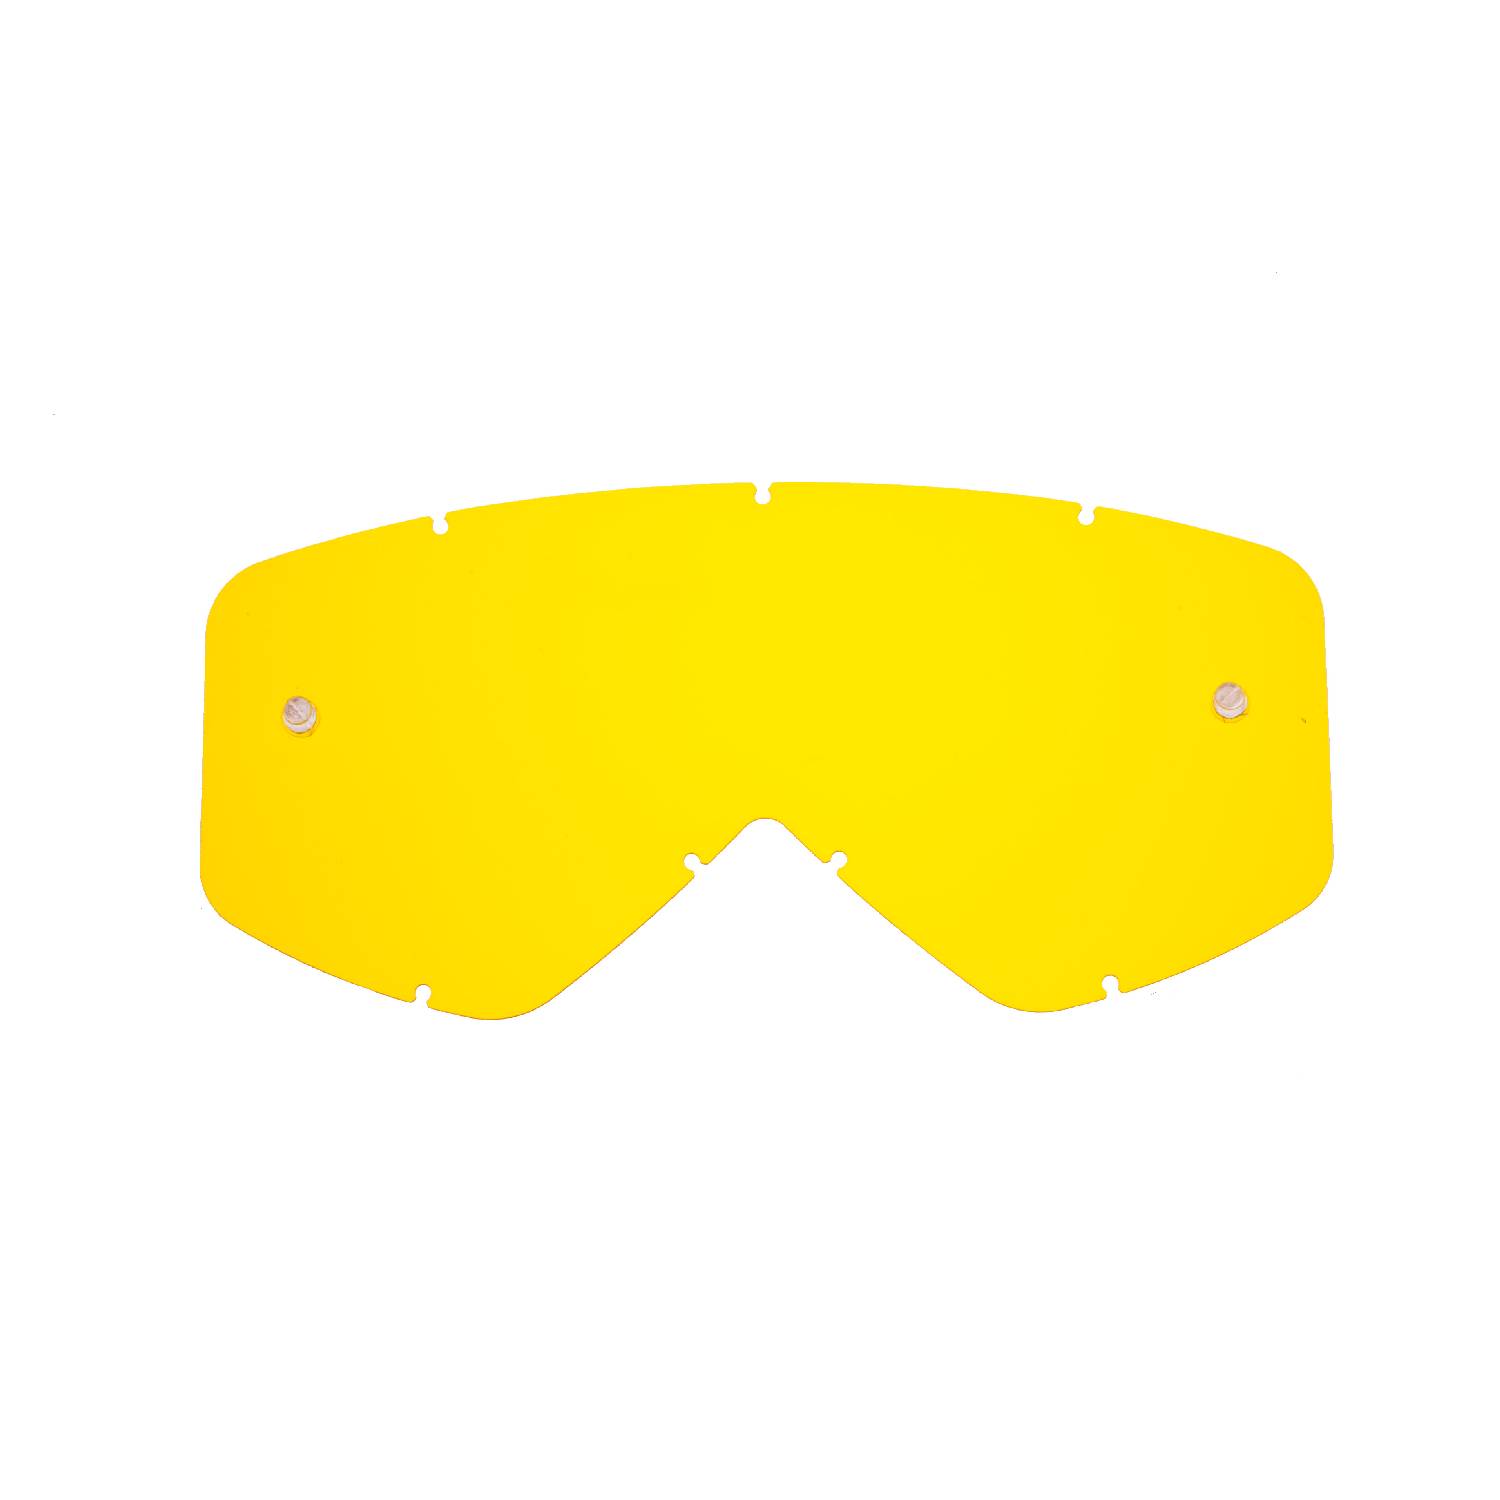 Lente di ricambio gialla compatibile per occhiale/maschera Smith Fuel / Intake / V1 / V2